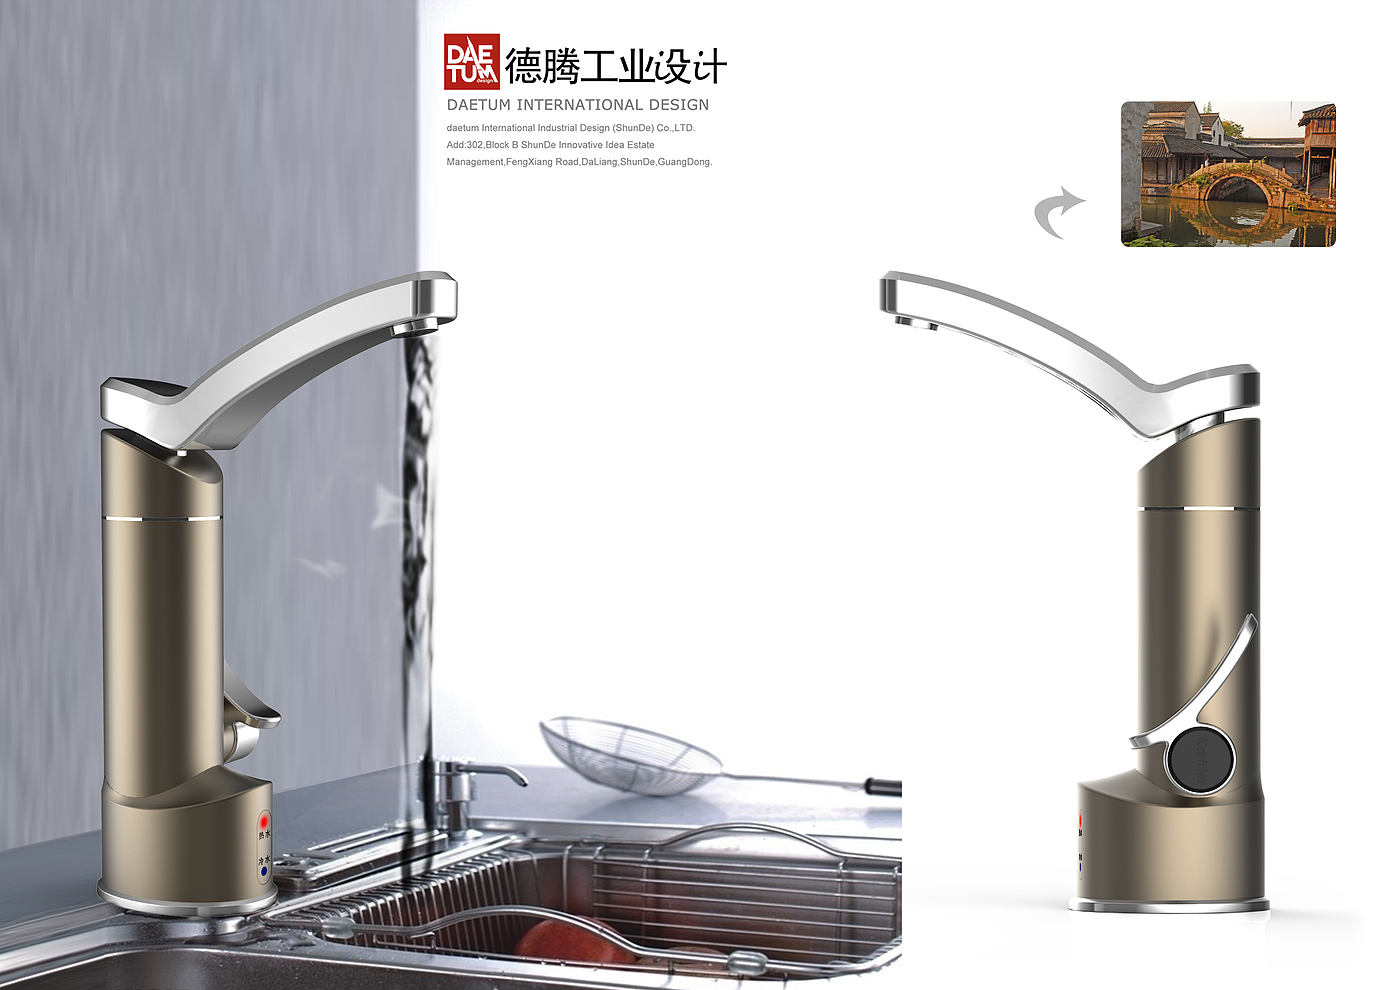 厨房电器设计，广东工业设计公司，产品外观设计公司，家电设计，